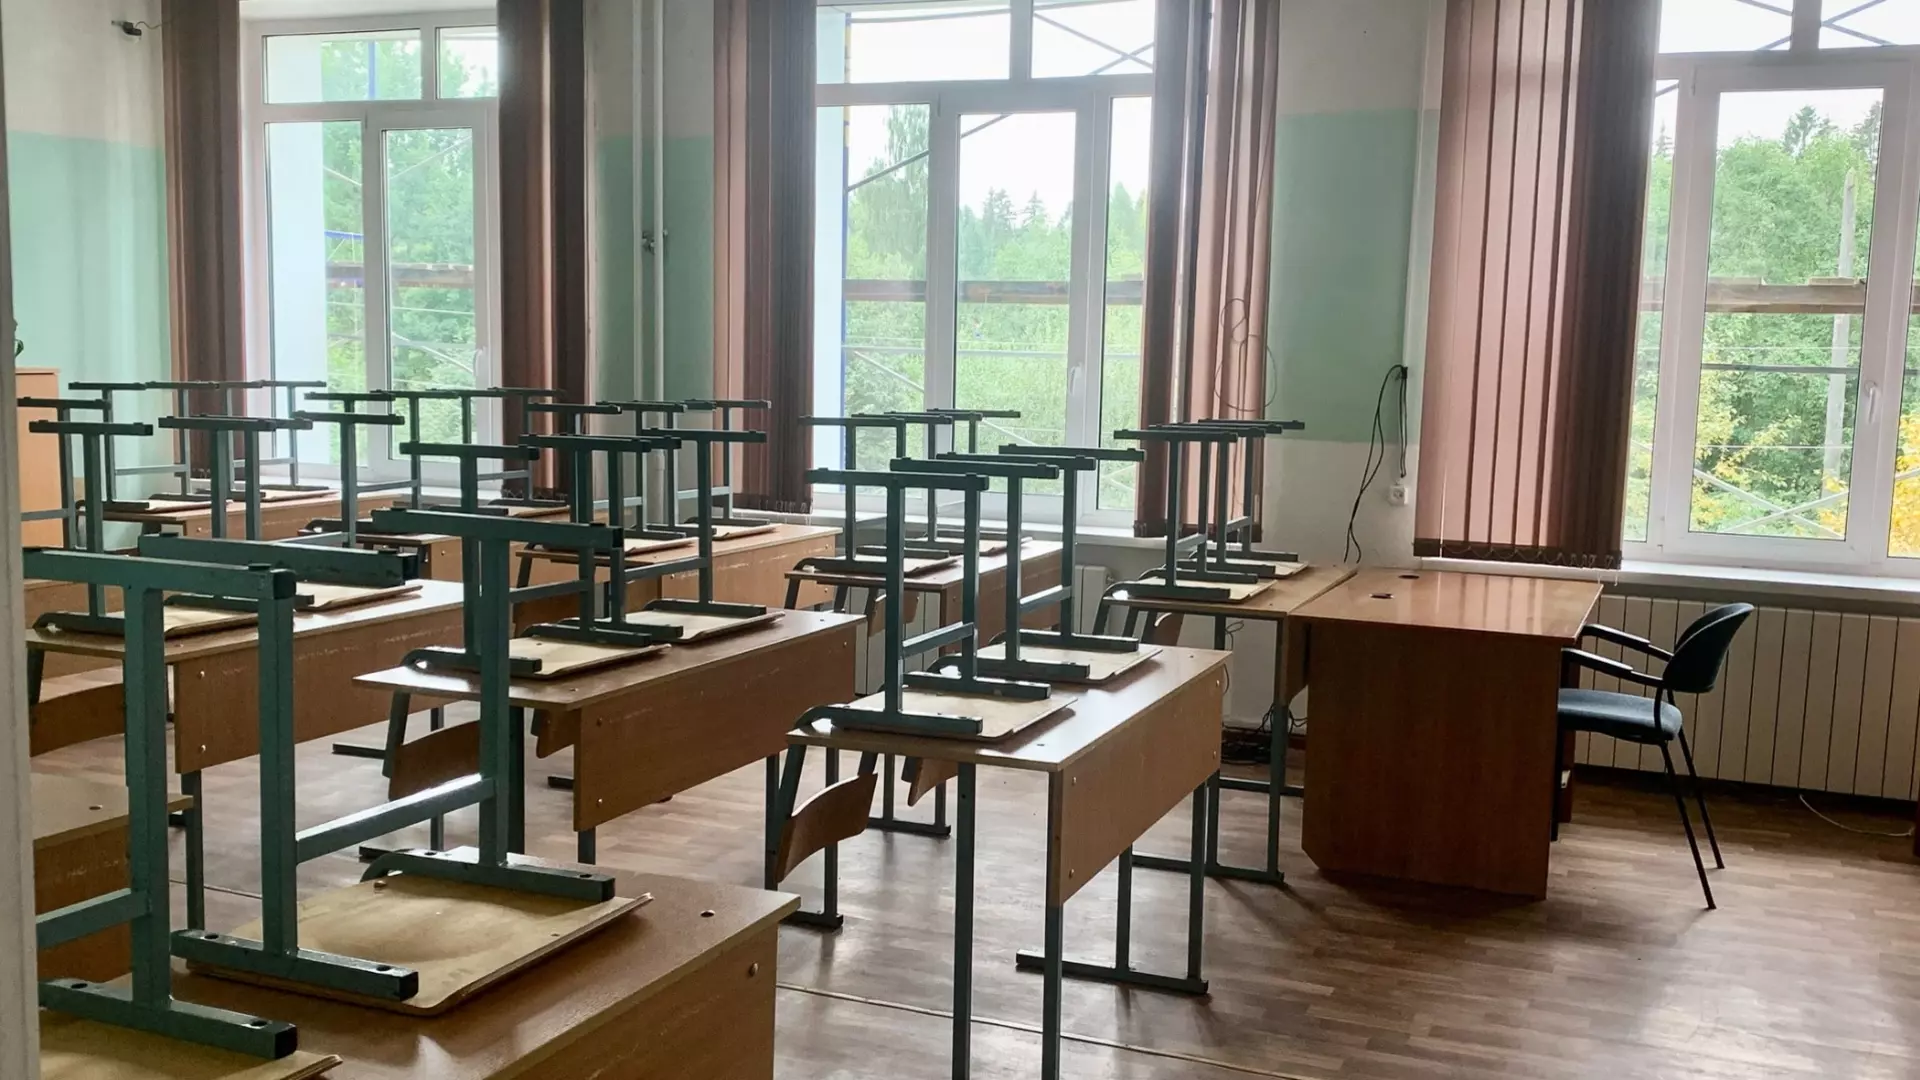 Охранник насмерть забил насмерть коллегу на застолье в школе в Екатеринбурге